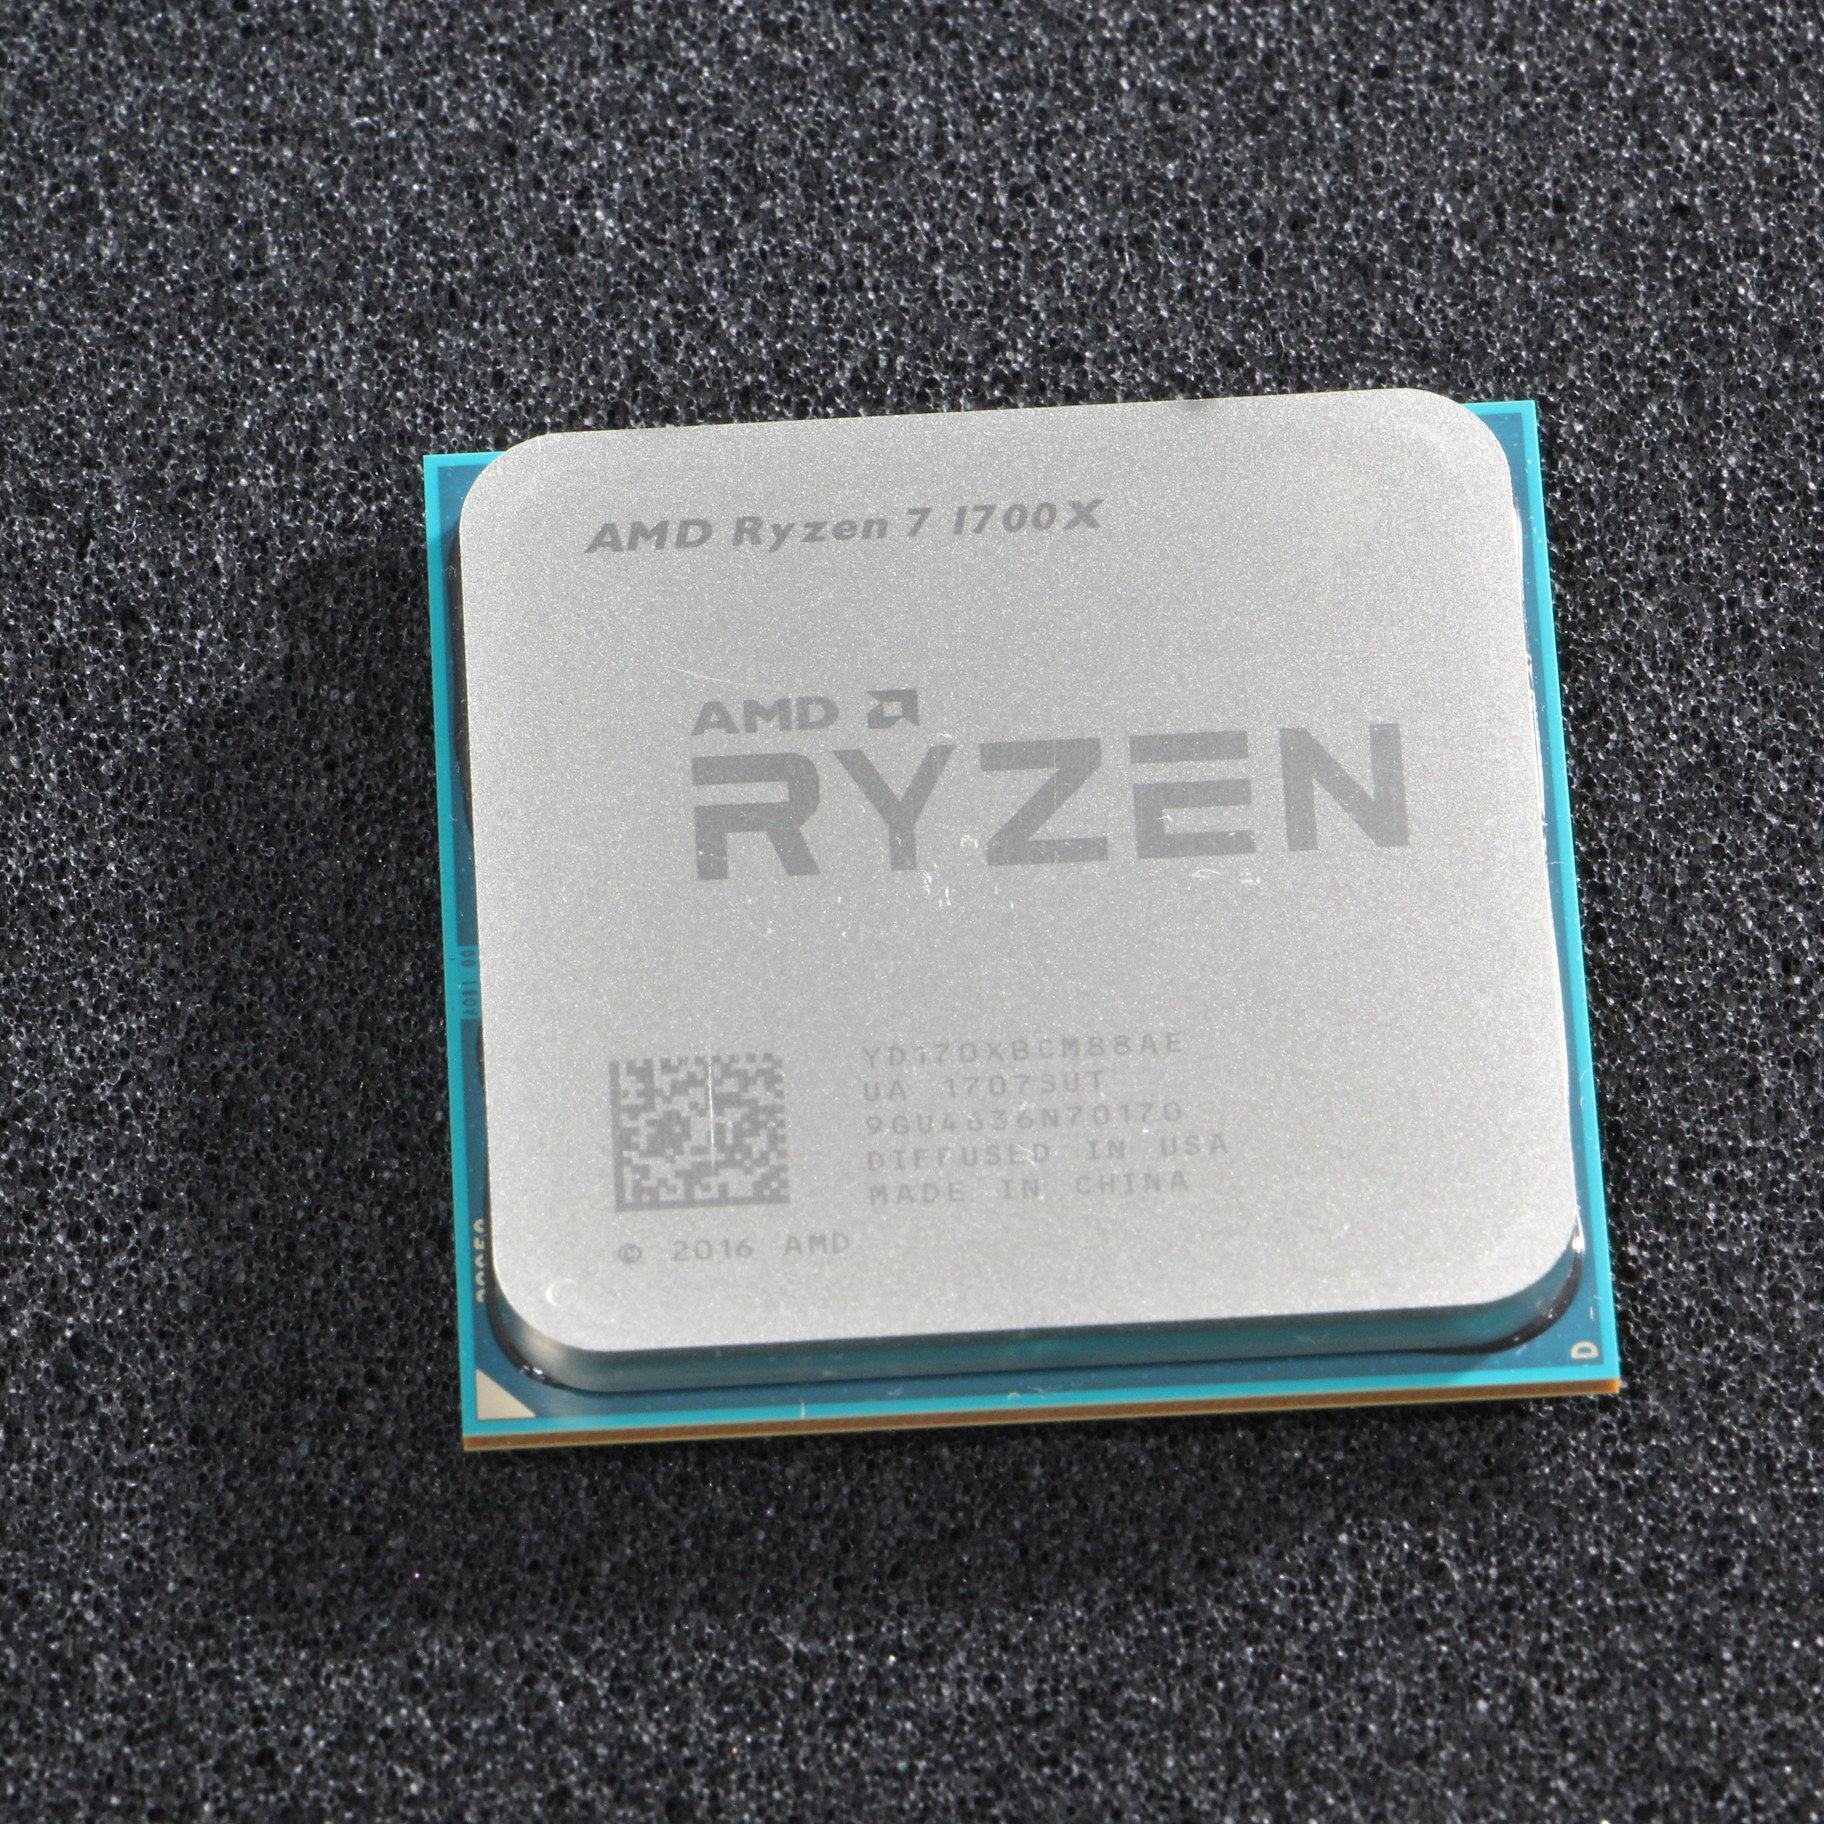 AMD Ryzen 7 1700X CPU